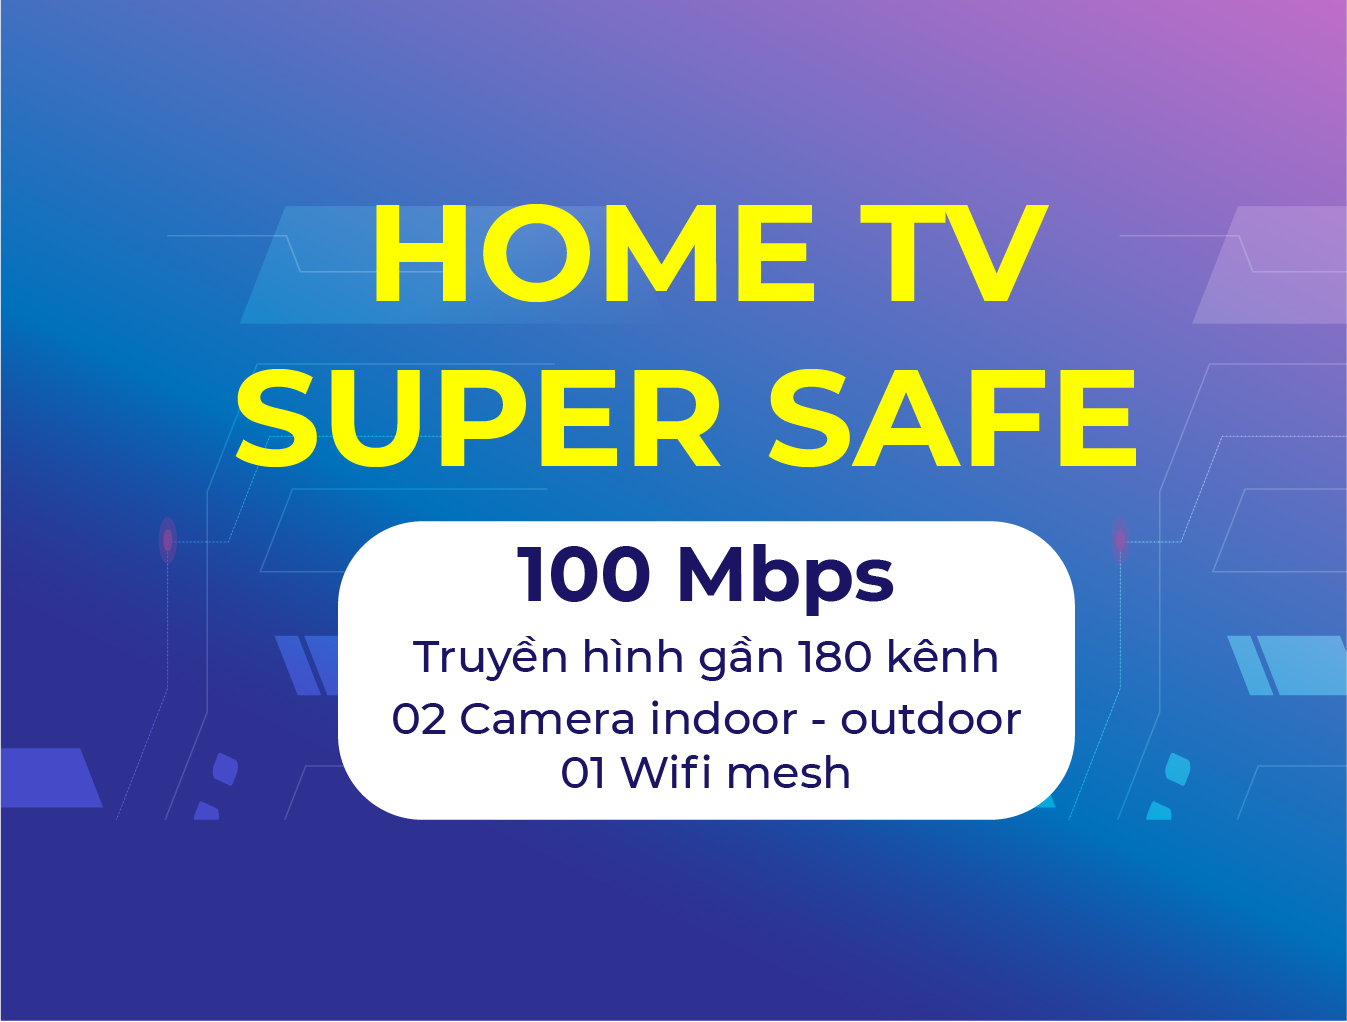 Home TV Super Safe